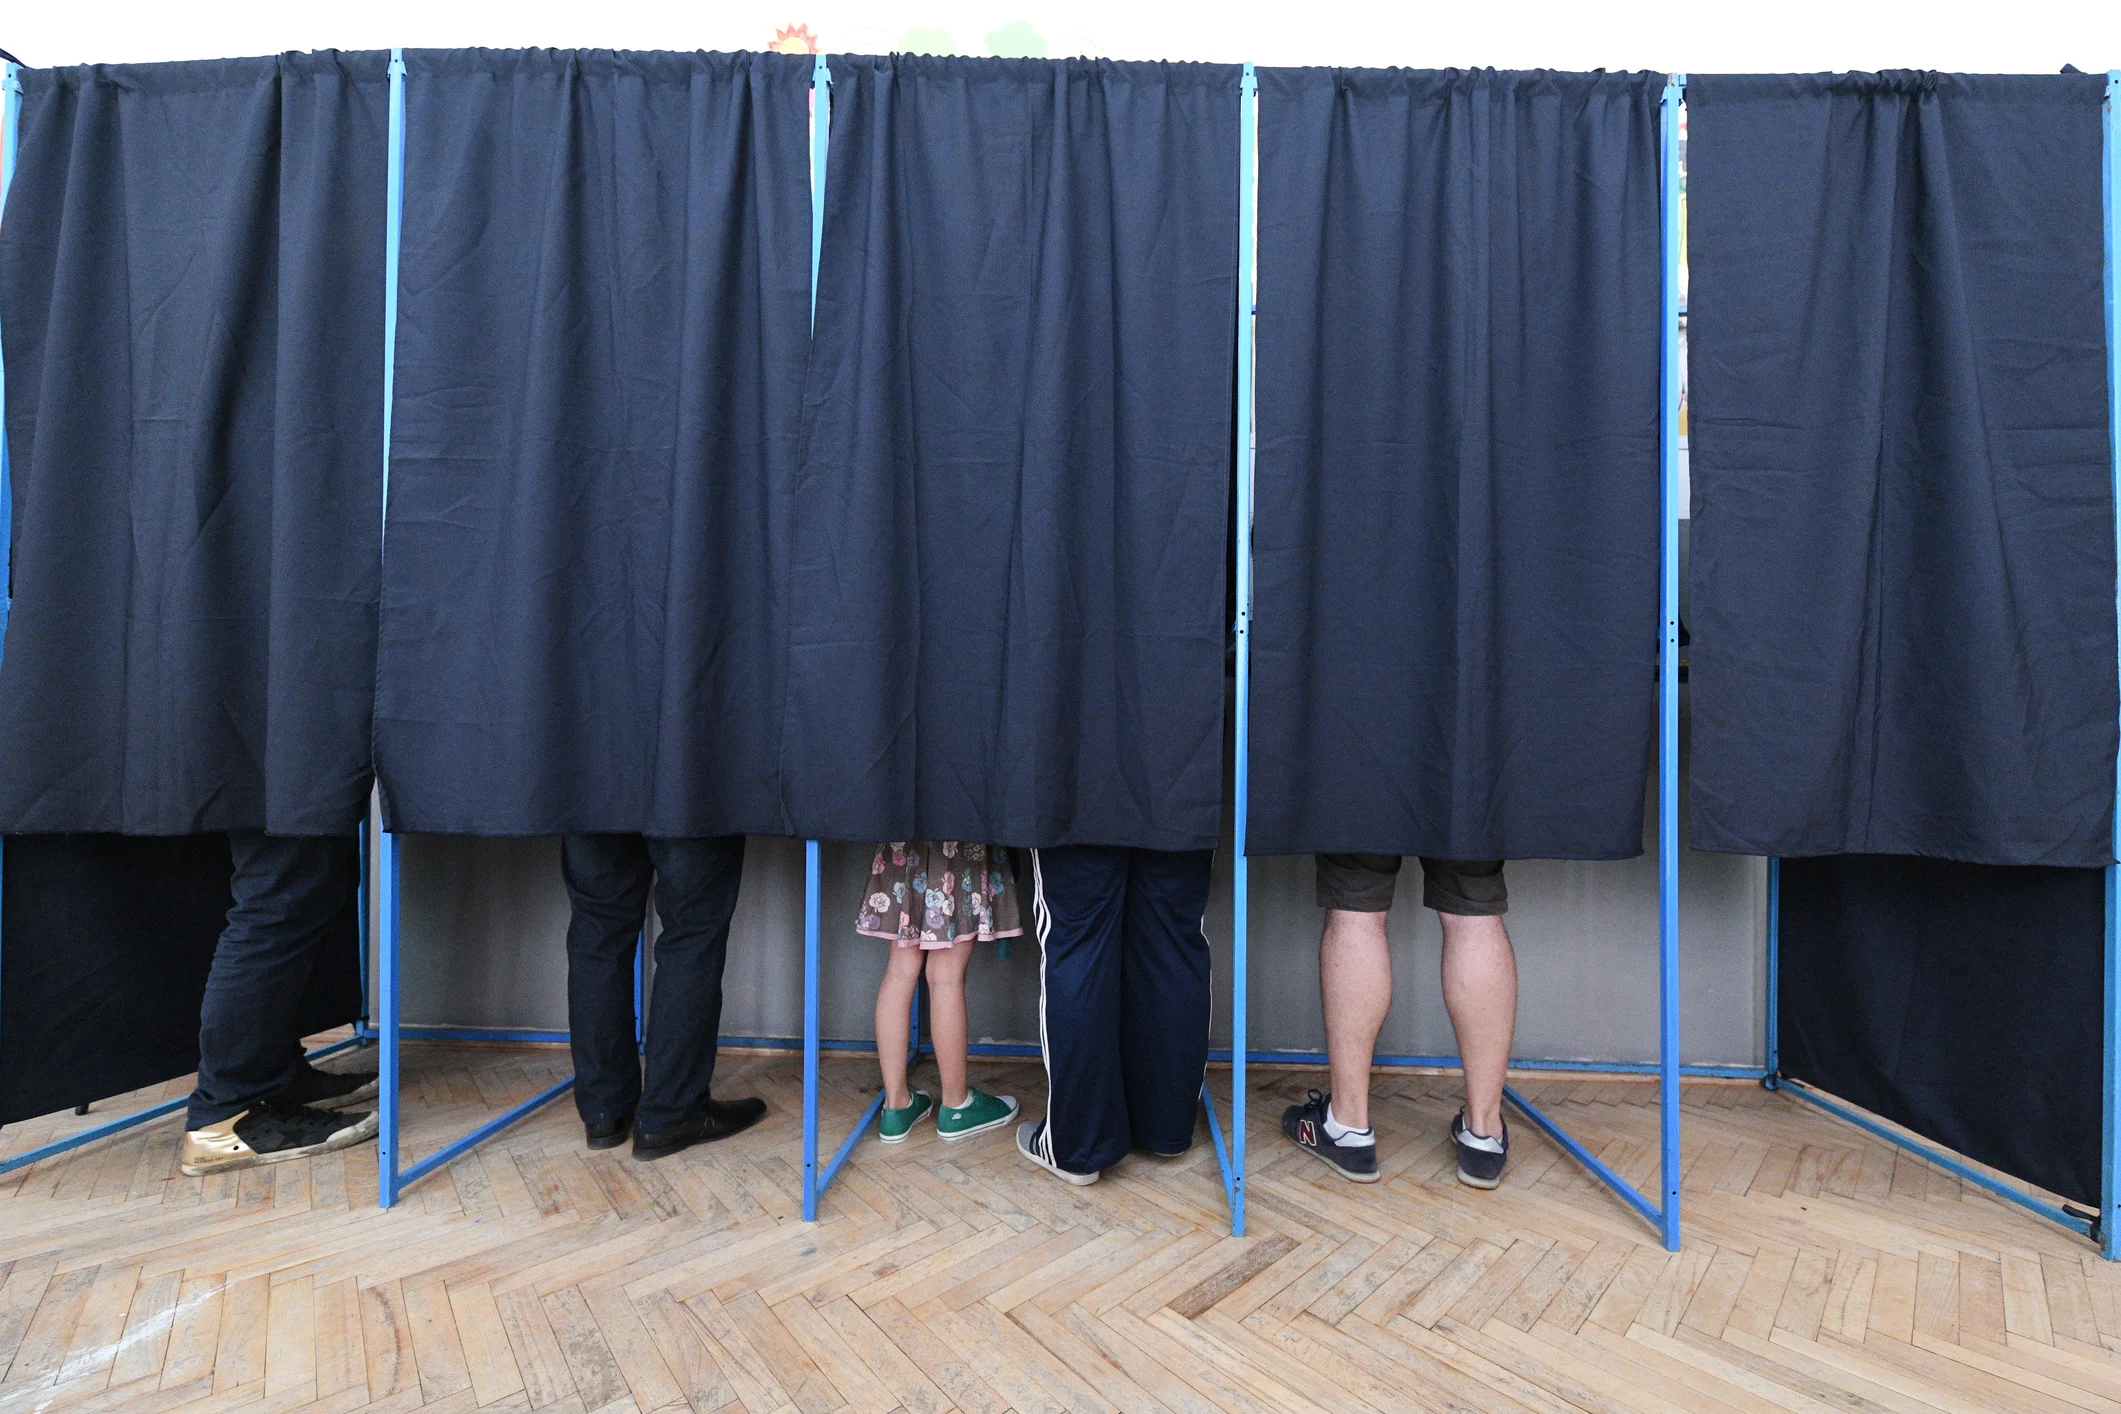 Alegeri locale în mai multe localități din Republica Moldova. Rezultate parțiale